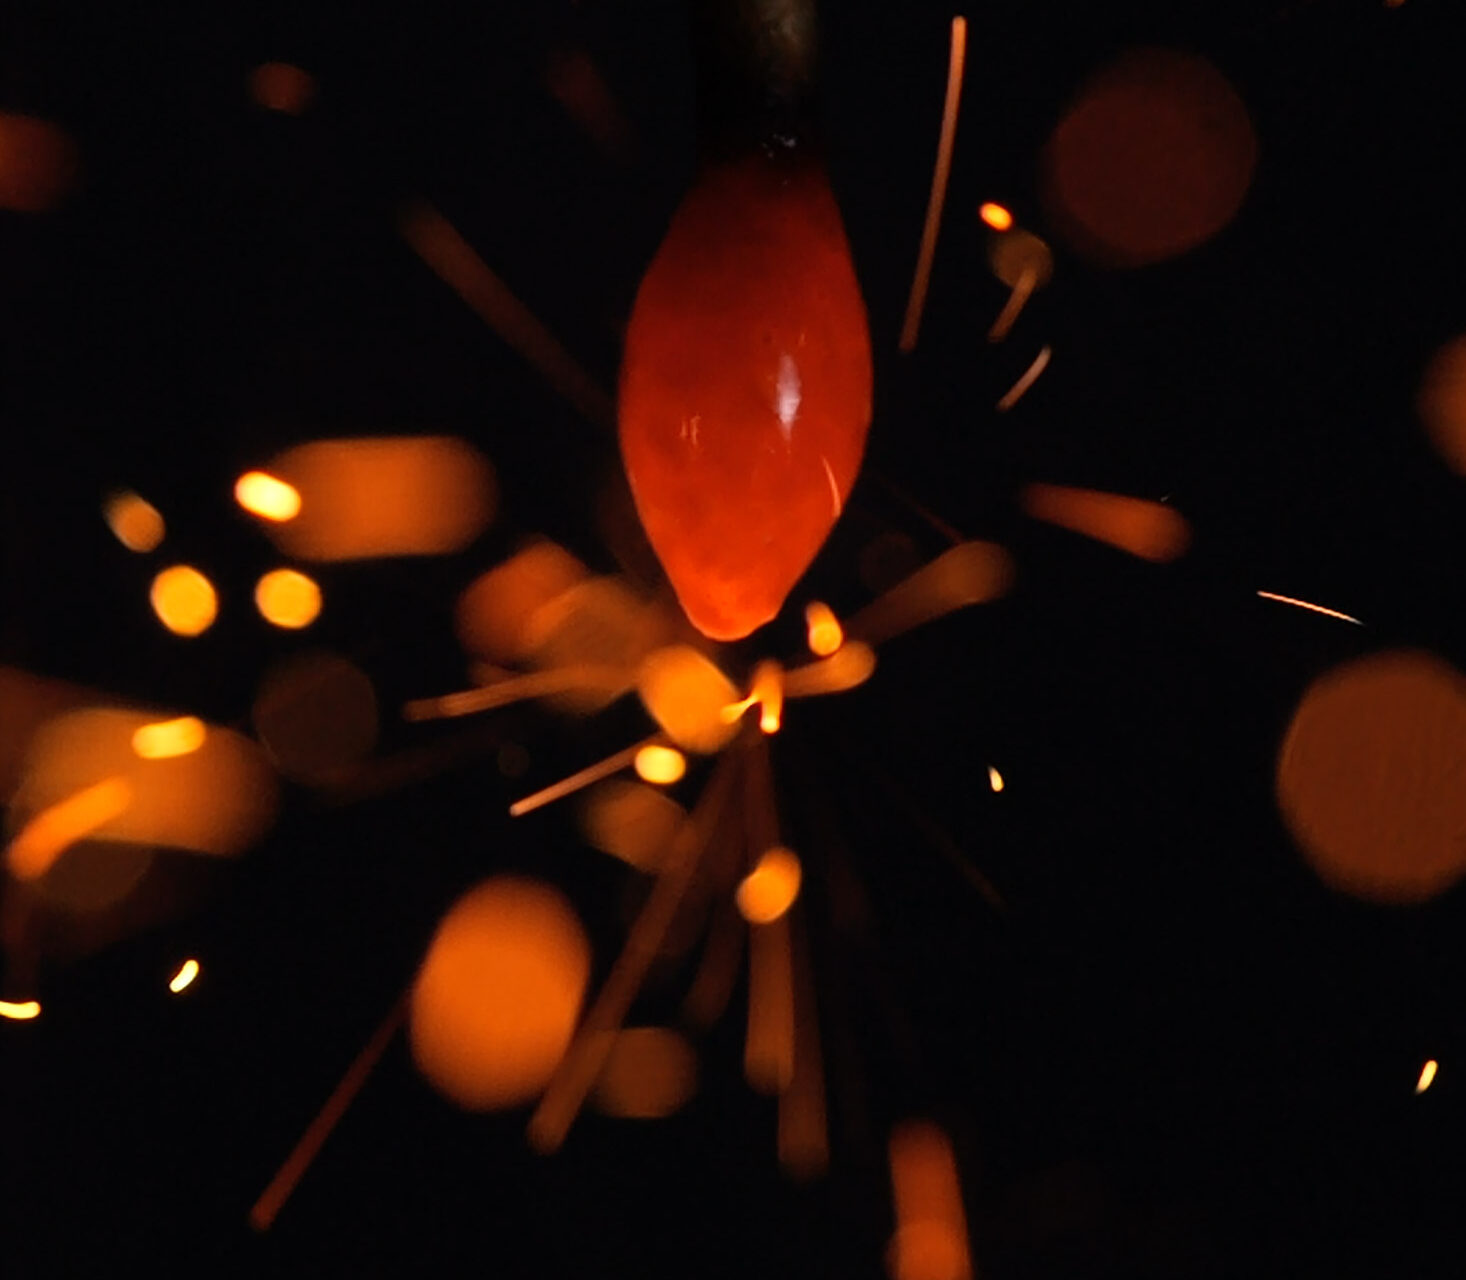 LUMIX CINEMA線香花火の火種から火花が飛ぶ瞬間のマクロ写真